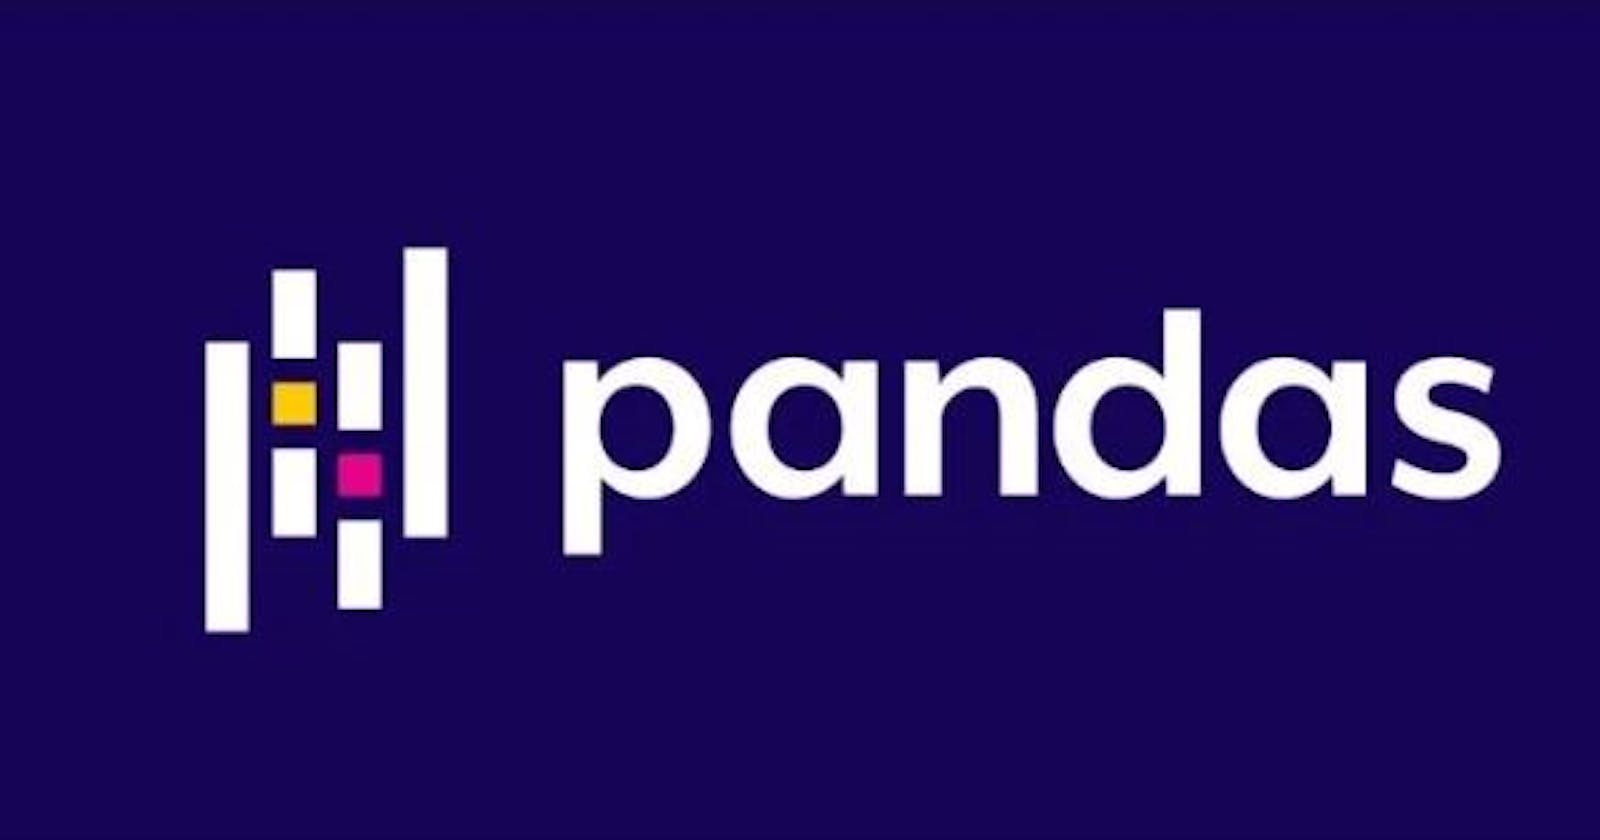 Pandas - Cleaning Data